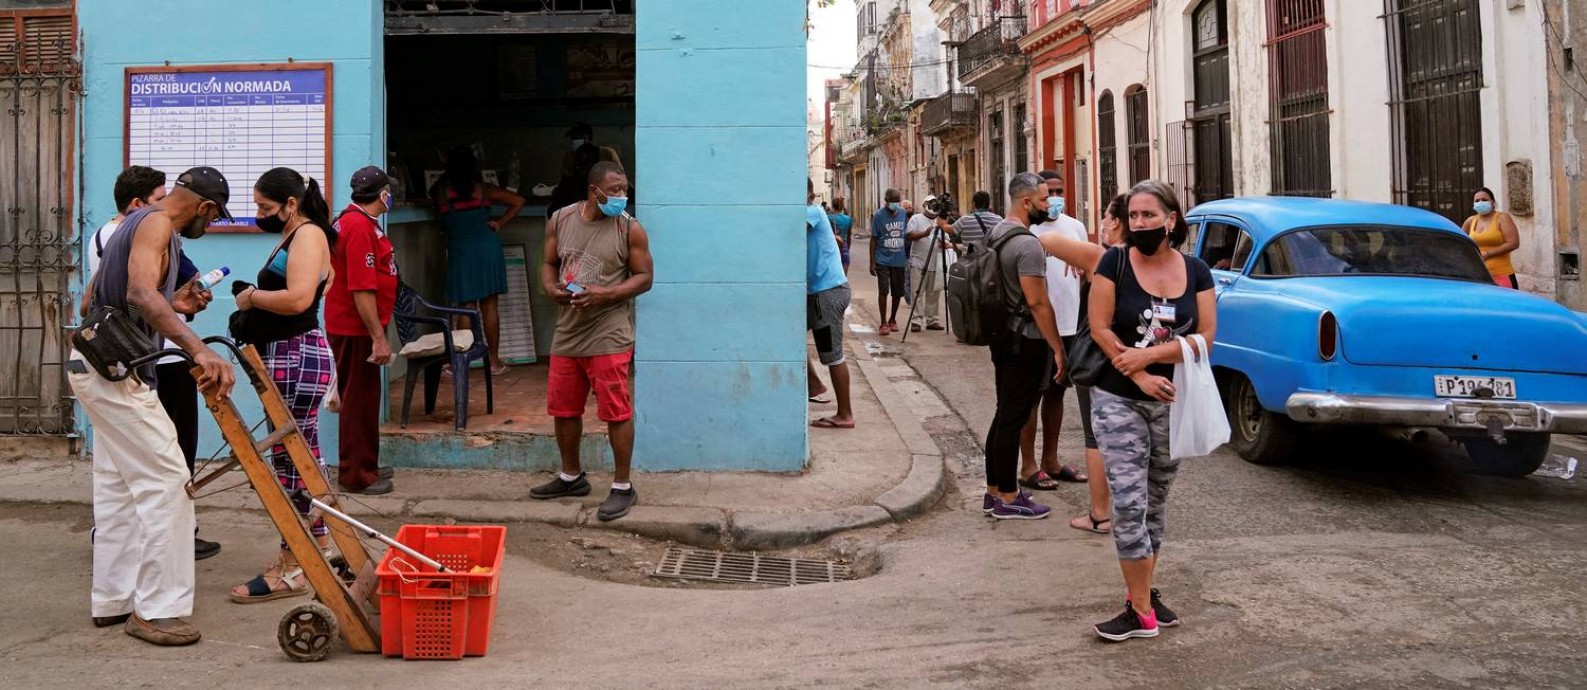 Cubanos aguardam na porta de ponto de distribuição de comida em Havana, capital cubana. País vive crise econômica com inflação alta Foto: Natalia Favre / REUTERS/21-12-2021